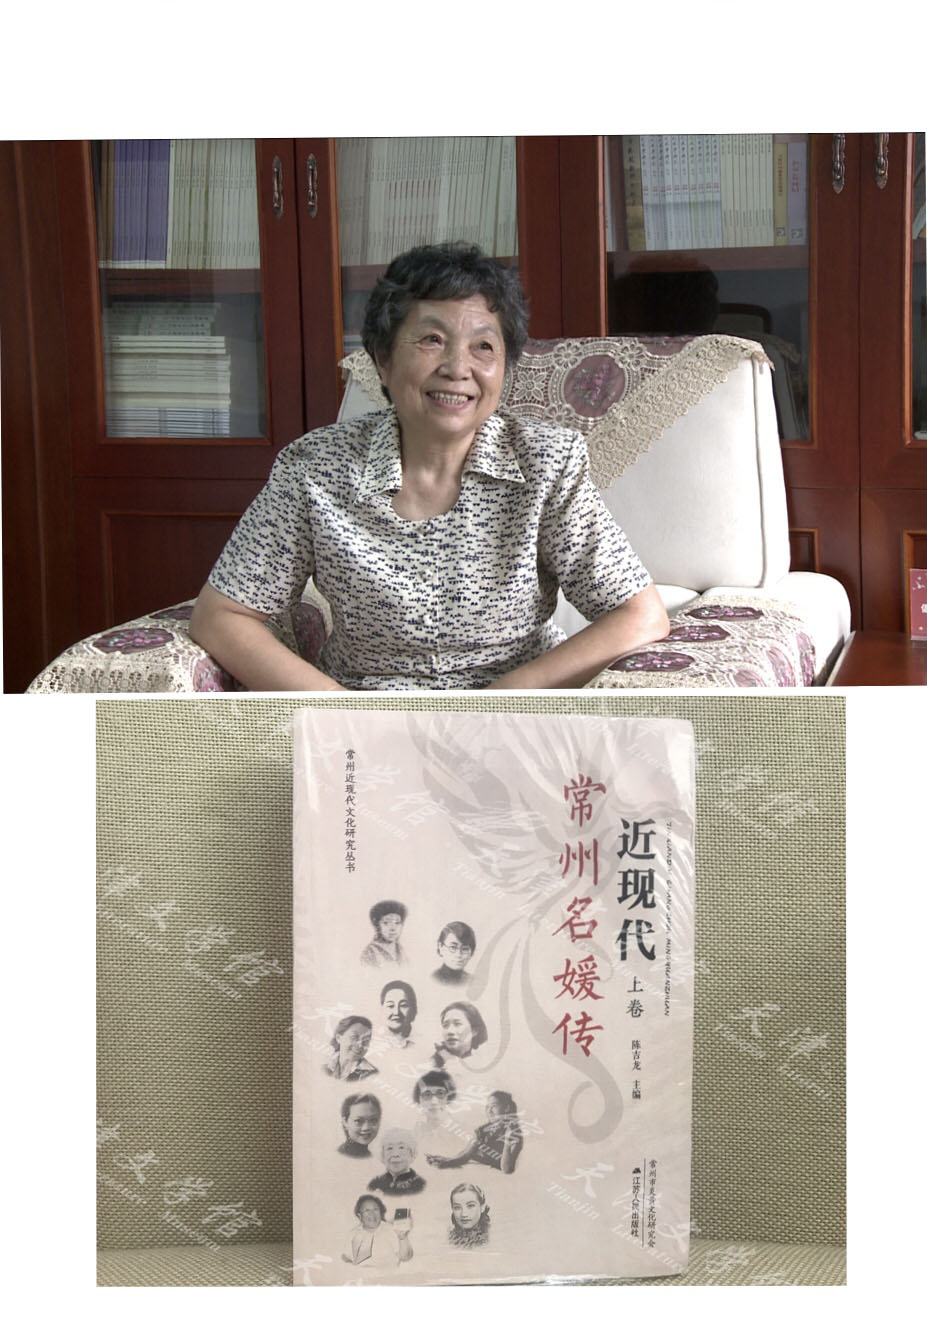 老作家袁静之女娄向丽捐赠书籍《近现代常州名媛传》